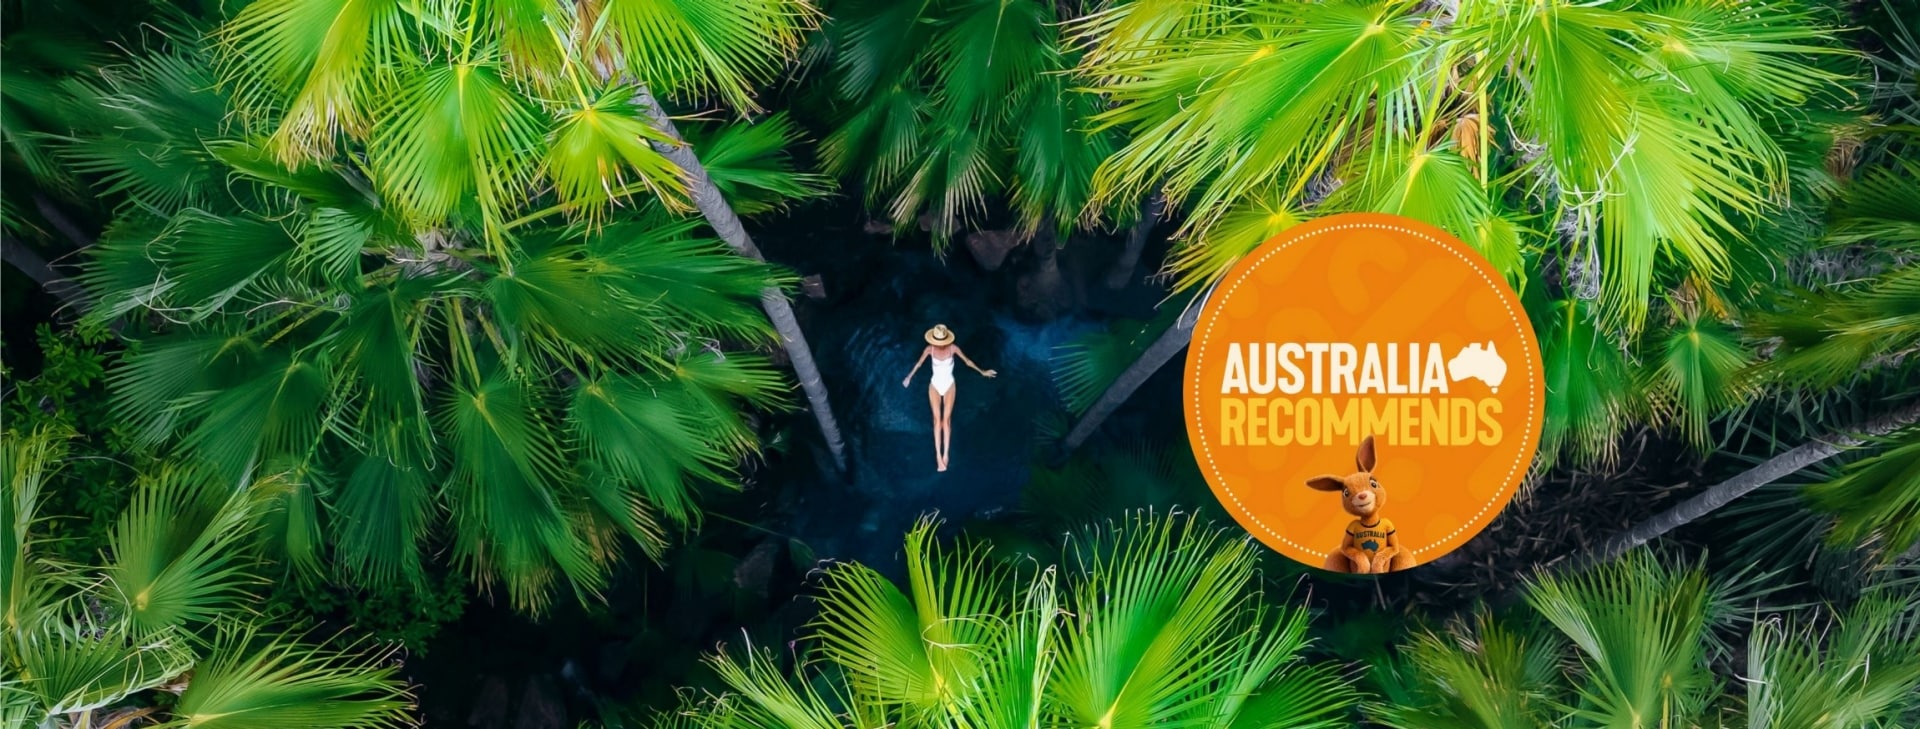 제버디 스프링스에서 물 위에 떠서 야자수 나무들에 둘러싸여 있는 여성의 모습을 공중에서 촬영한 사진, 킴벌리, 서호주 © 호주정부관광청